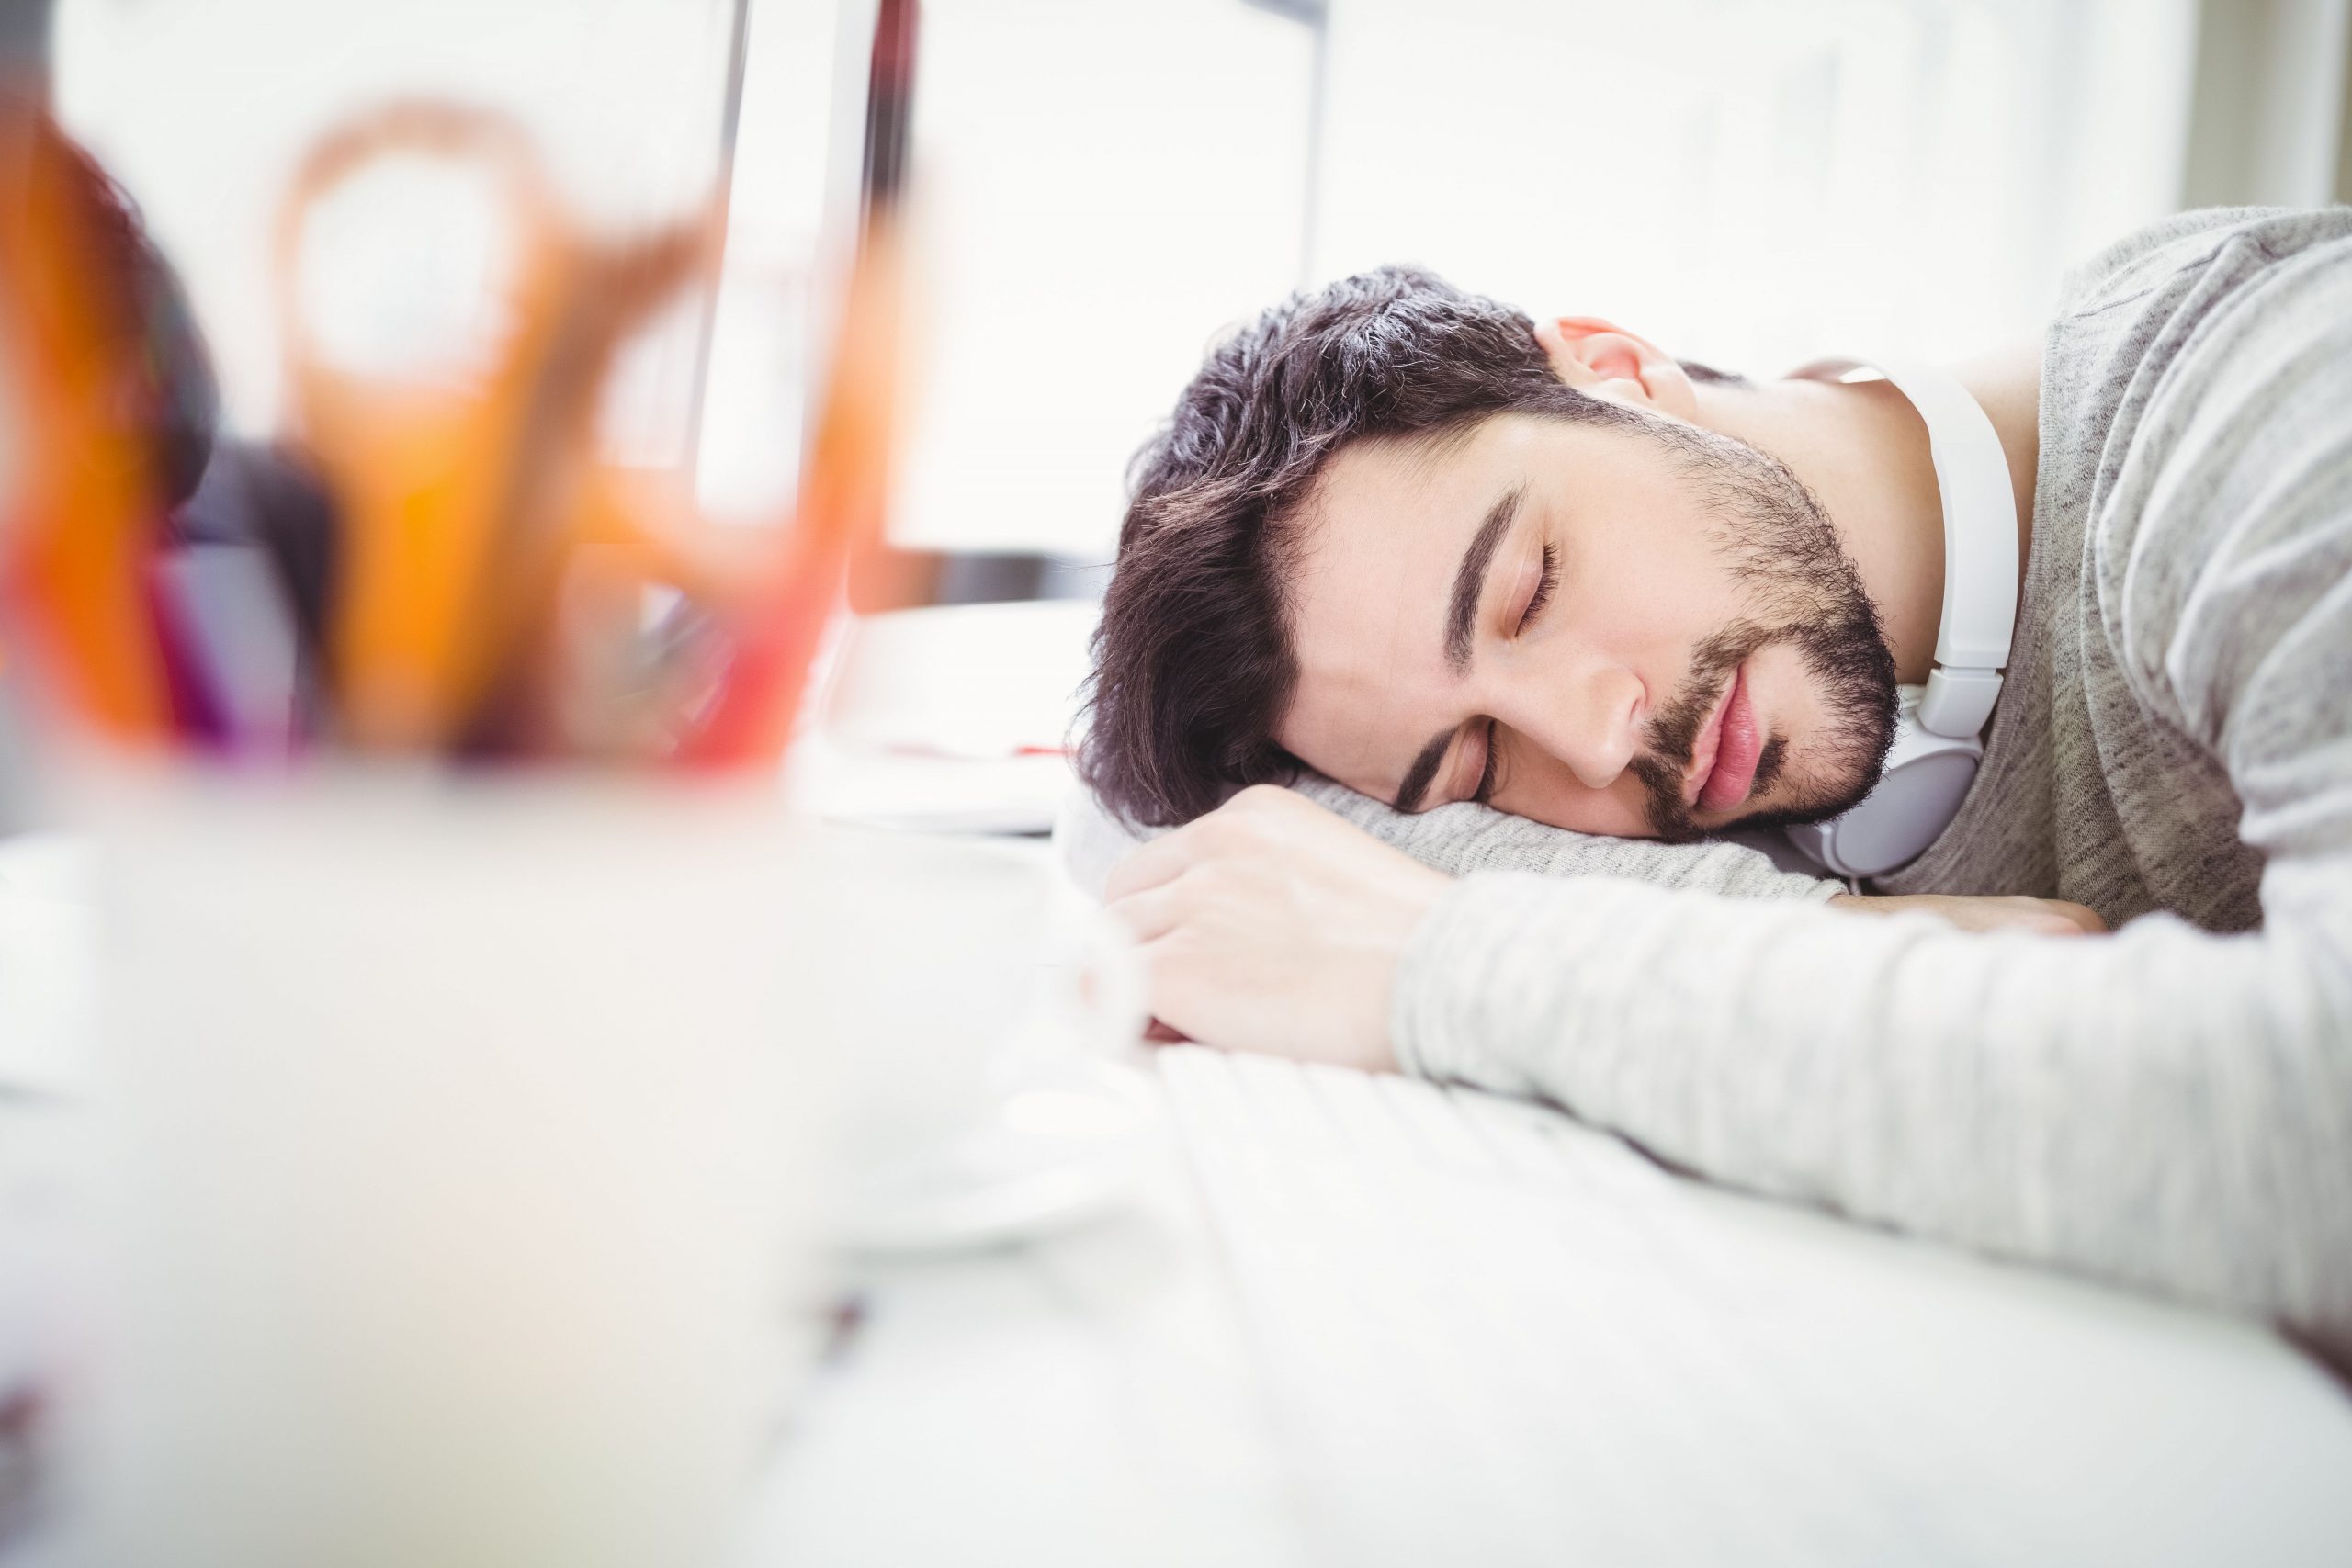 هل يمكن لأصحاب النوم الخفيف أن يناموا بعمق؟